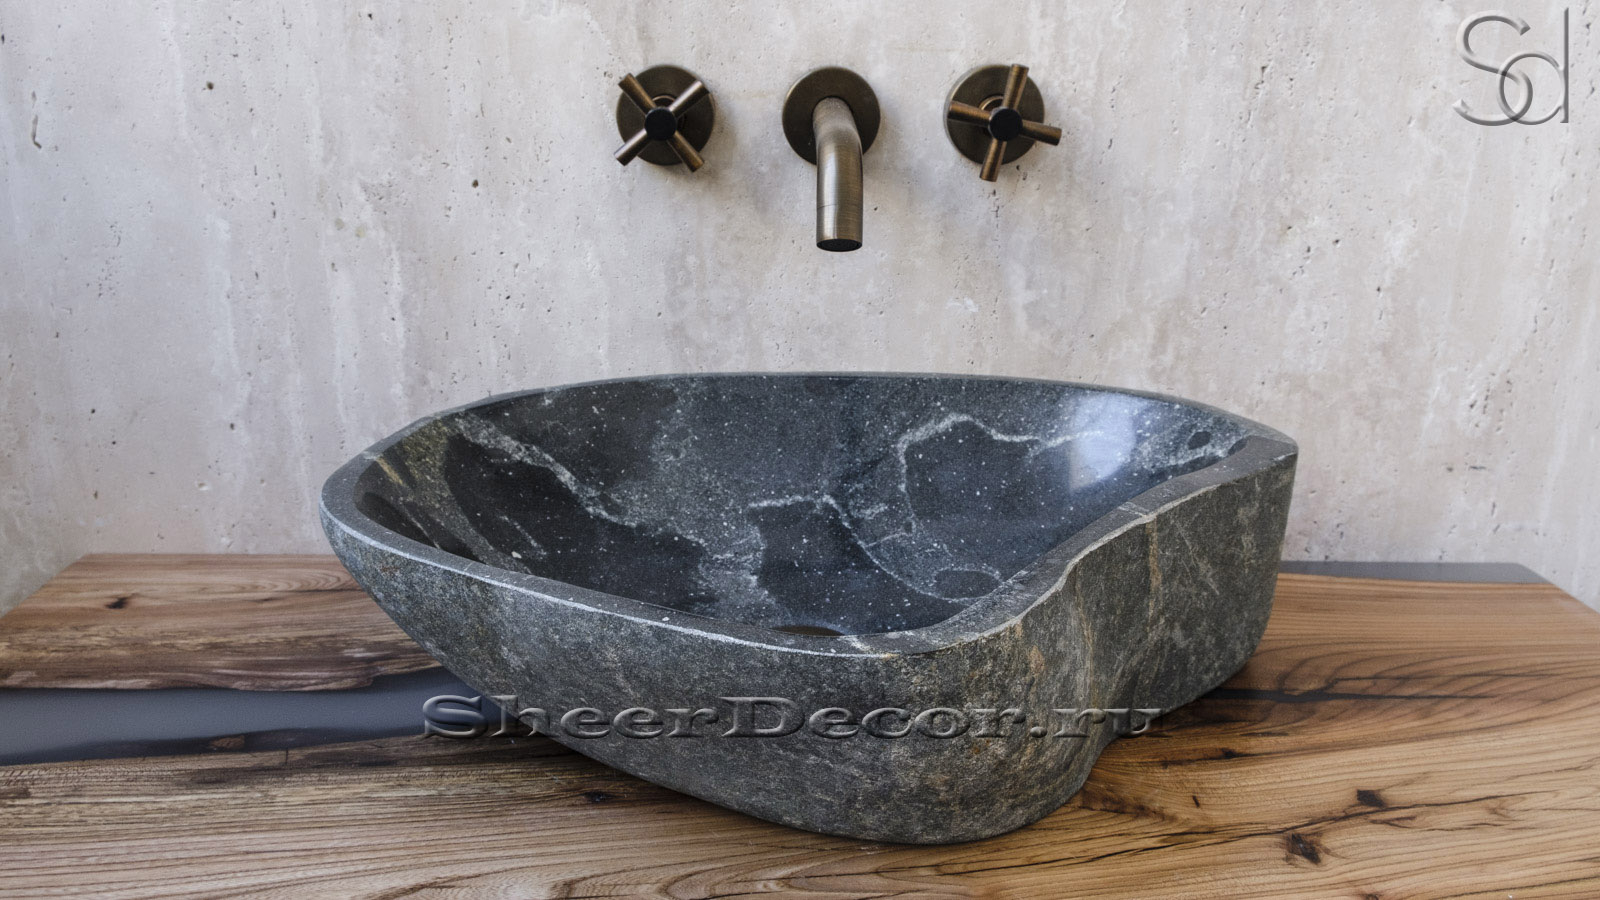 Мойка в ванную Piedra M36 из речного камня  Negro ИНДОНЕЗИЯ 0050691136_4